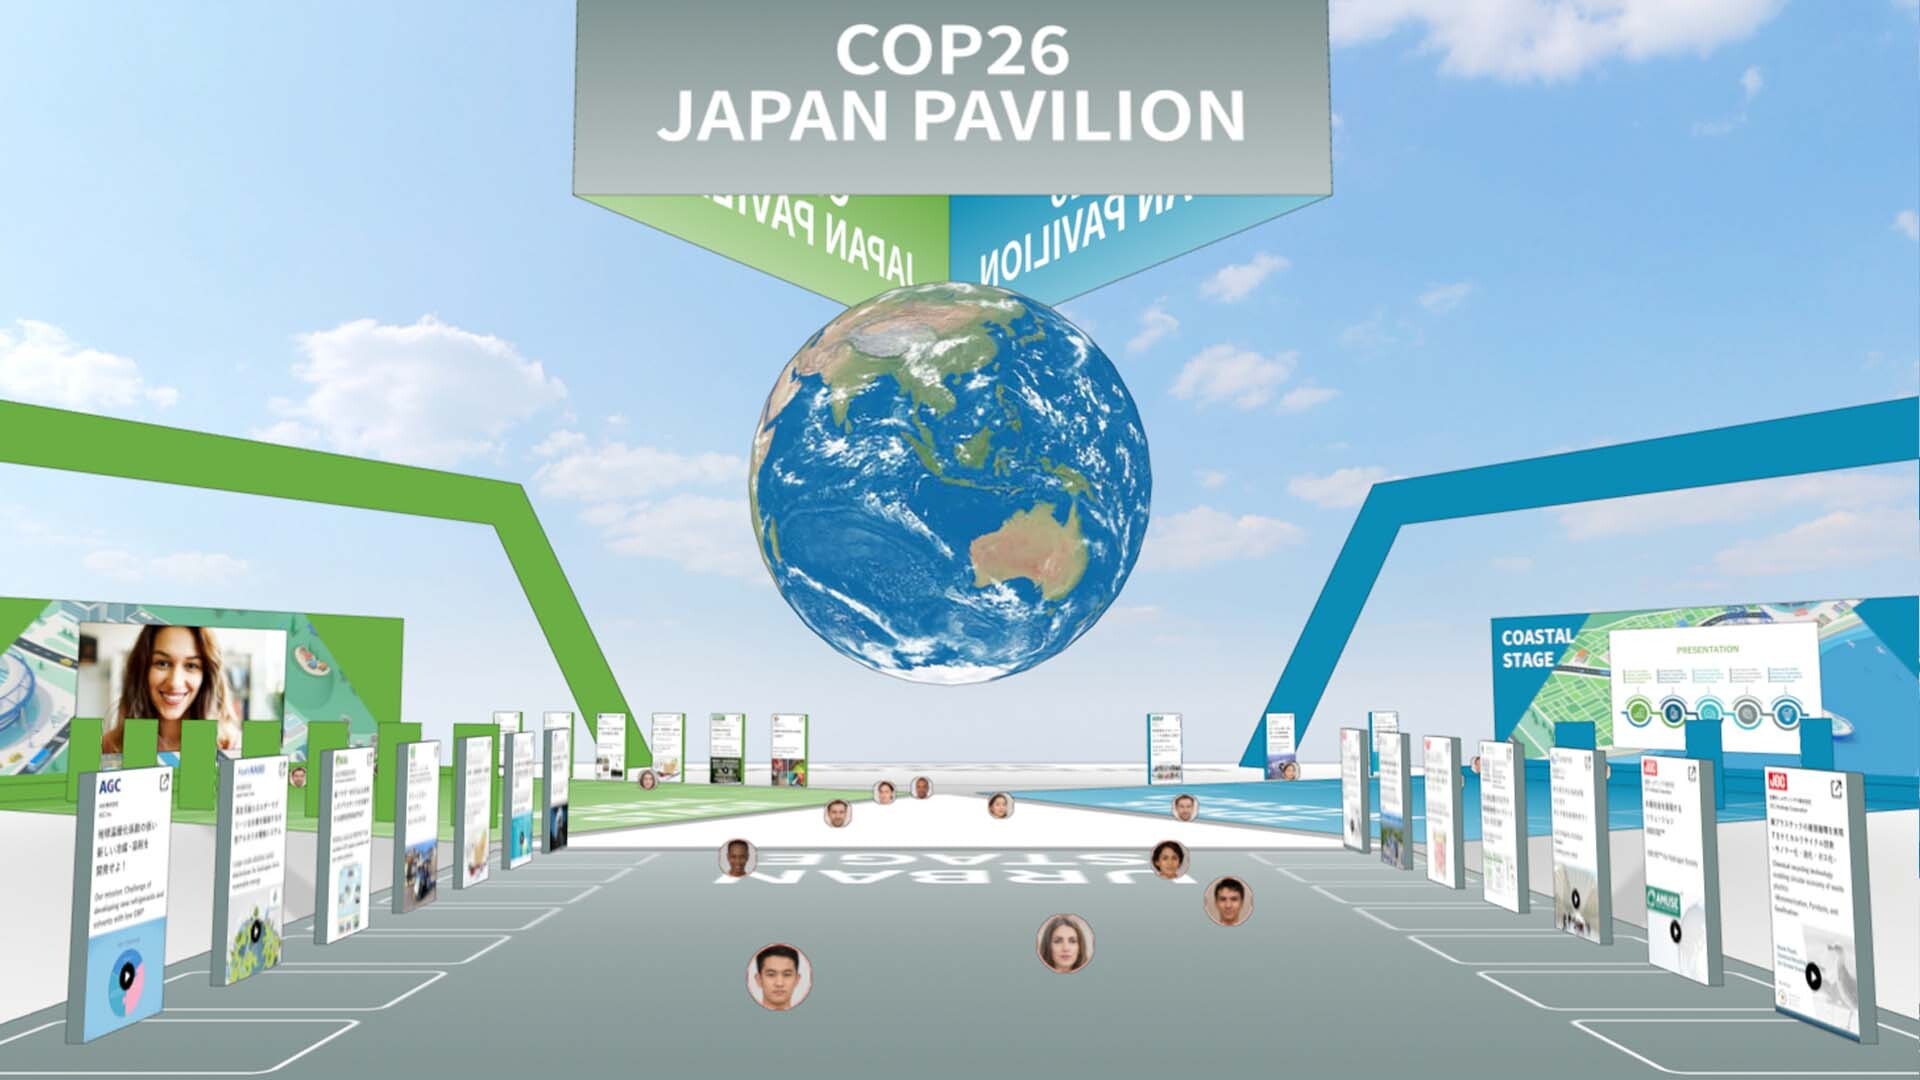 Japan pavilion at COP26